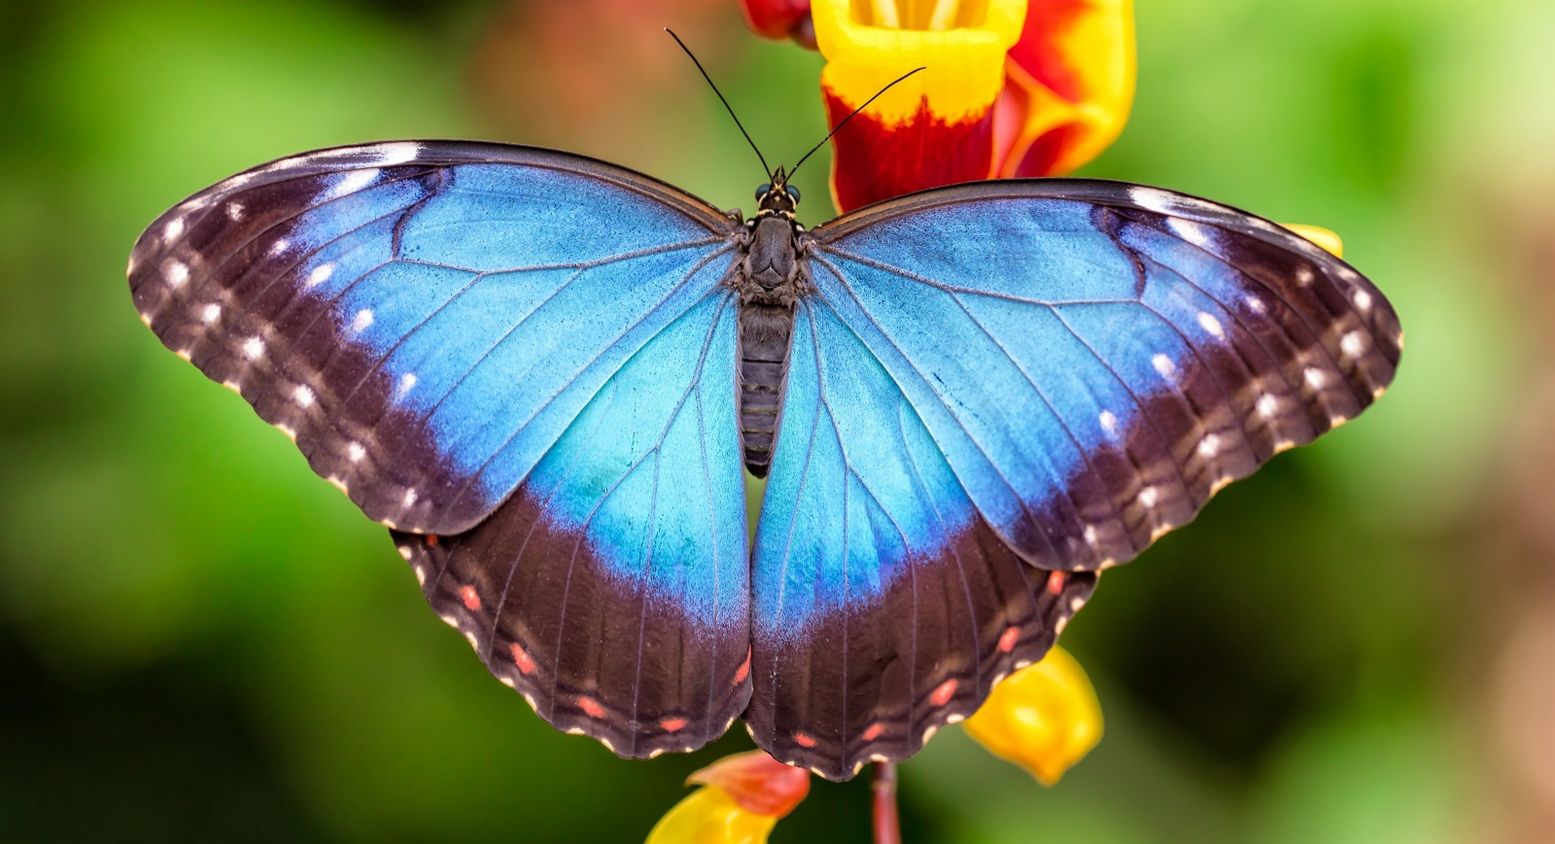 Bezoek een tropische vlindertuin tijdens Pasen. Foto: Vlindorado